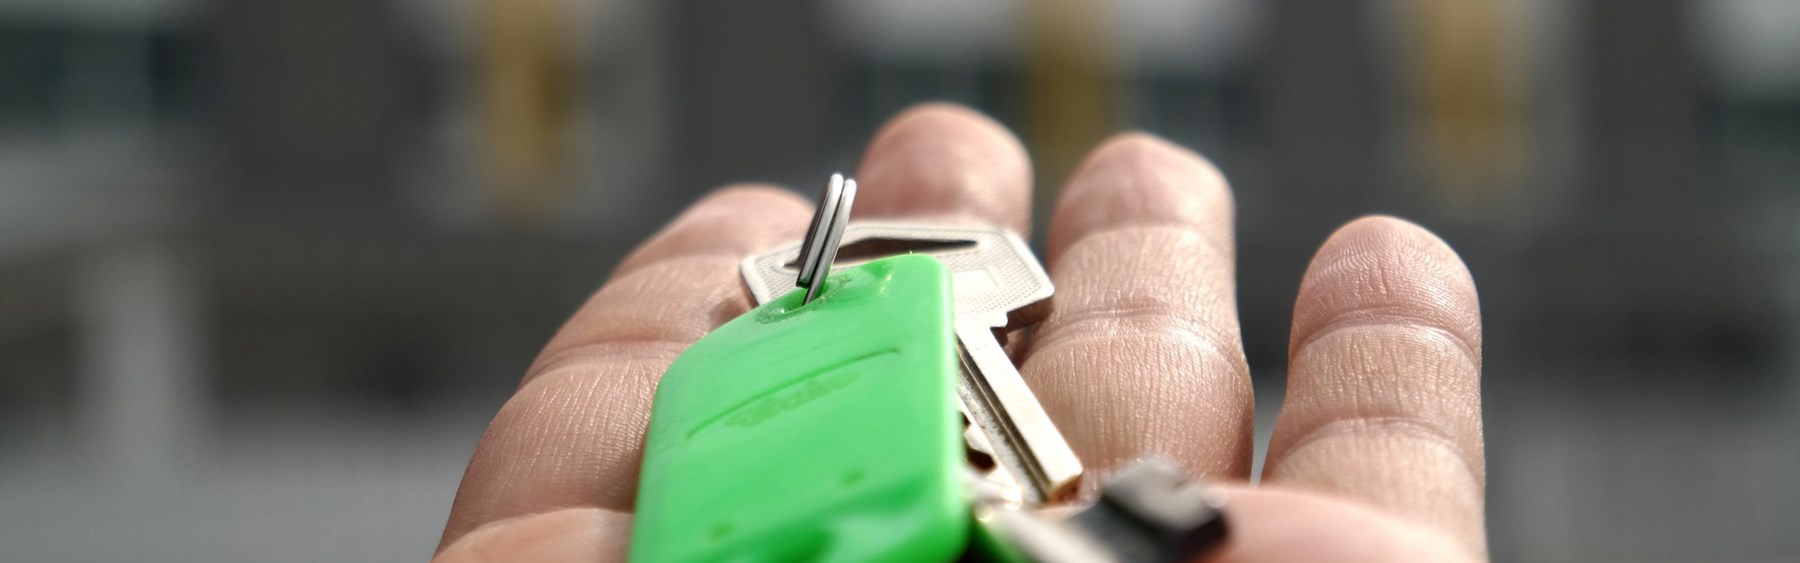 Udstrakt hånd med nøgle. Nøglen sidder fast i en grøn nøglering.